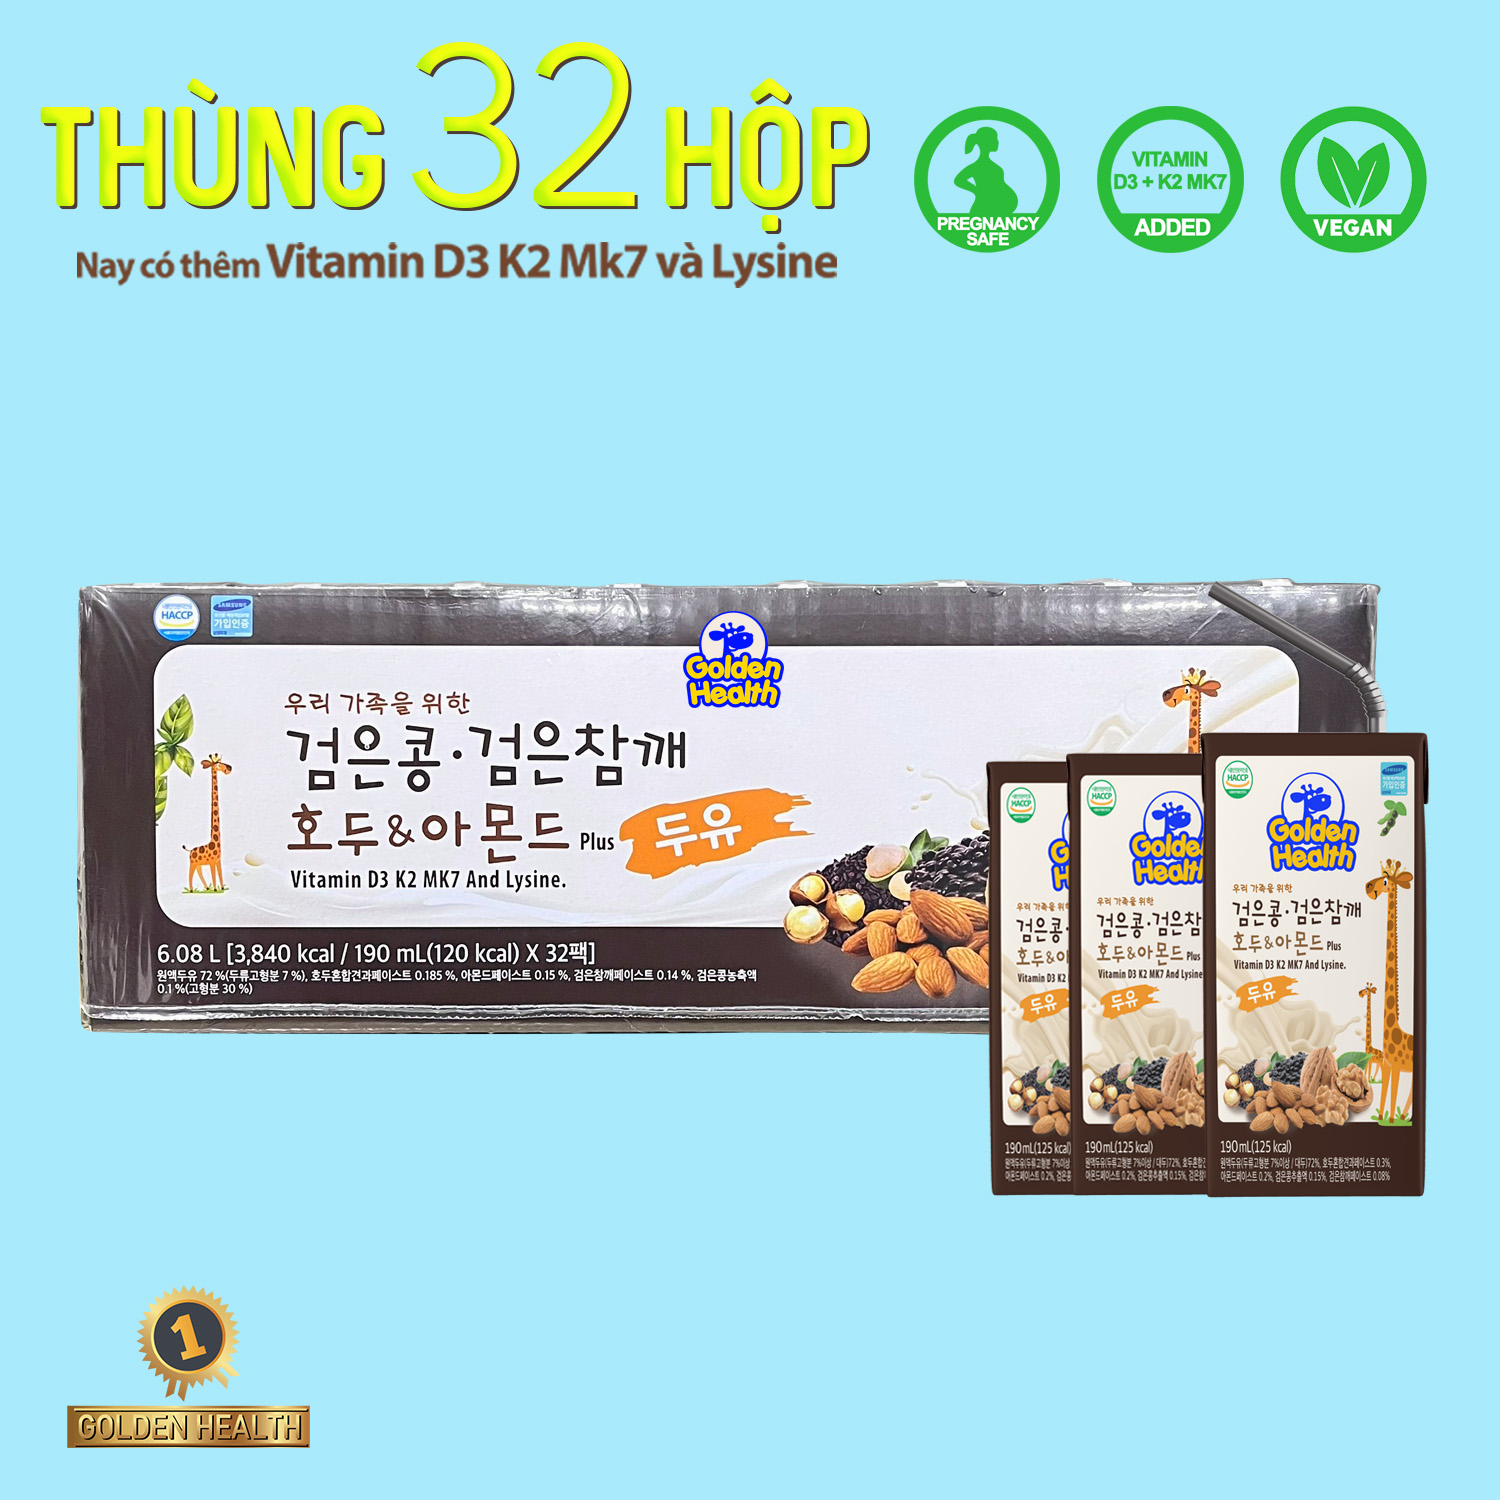 Sữa óc chó tăng chiều cao Golden Health Hàn Quốc - Hộp 190ml - Thùng 32 hộp